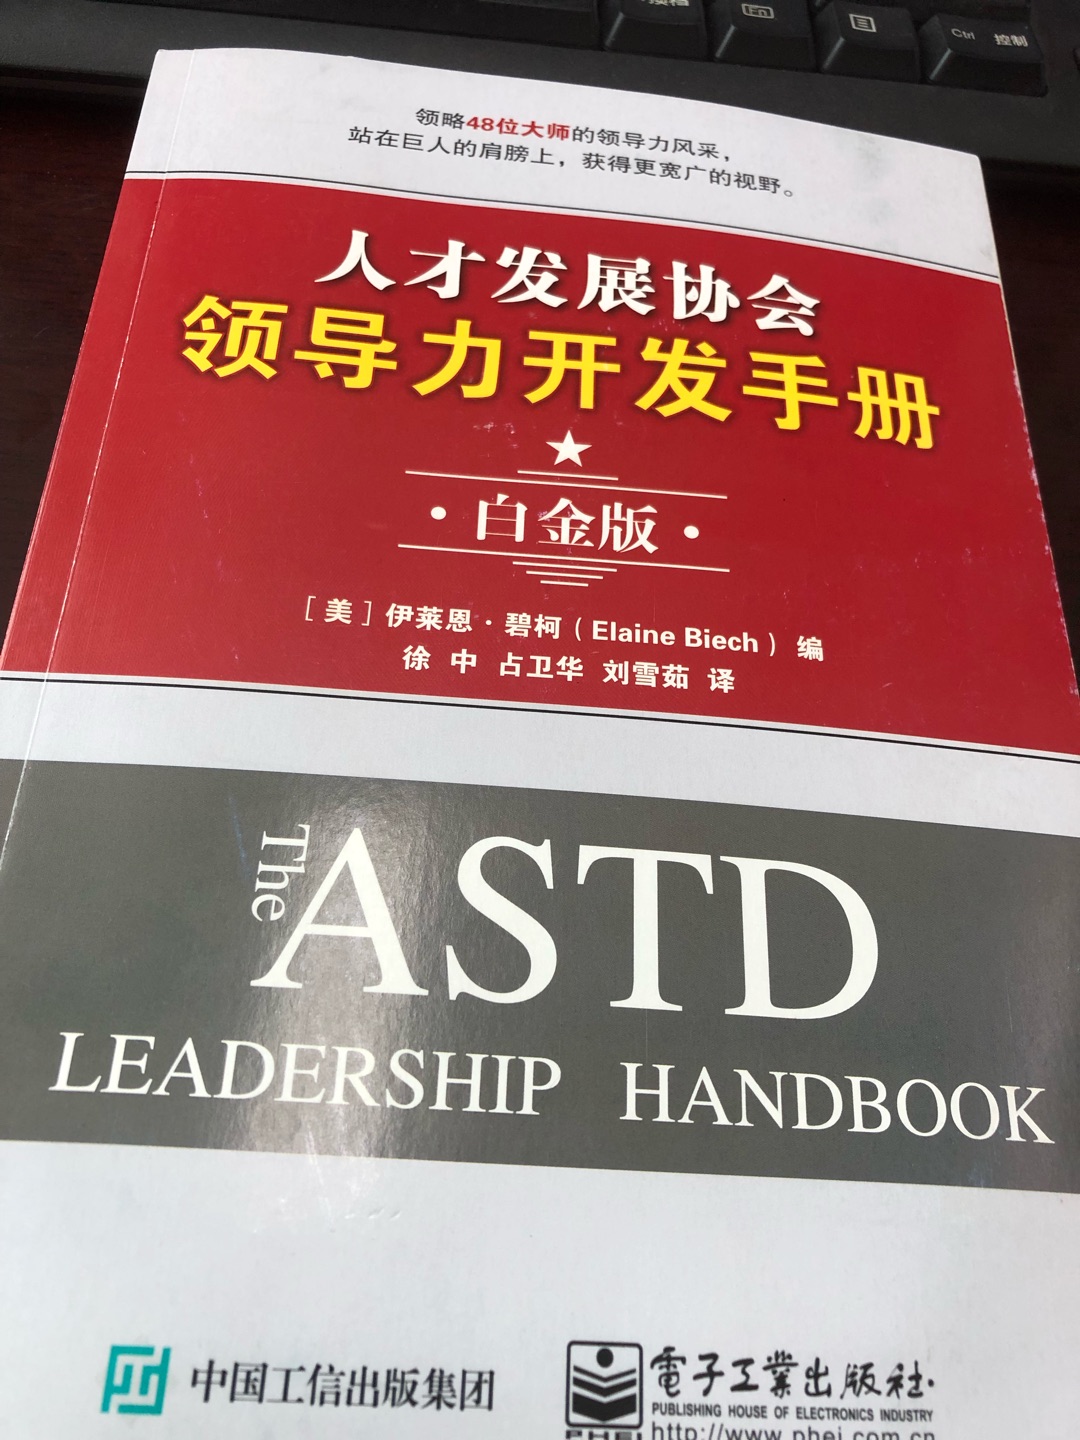 有关领导力方面非常权威和全面的一部著作，应该仔细阅读学习。